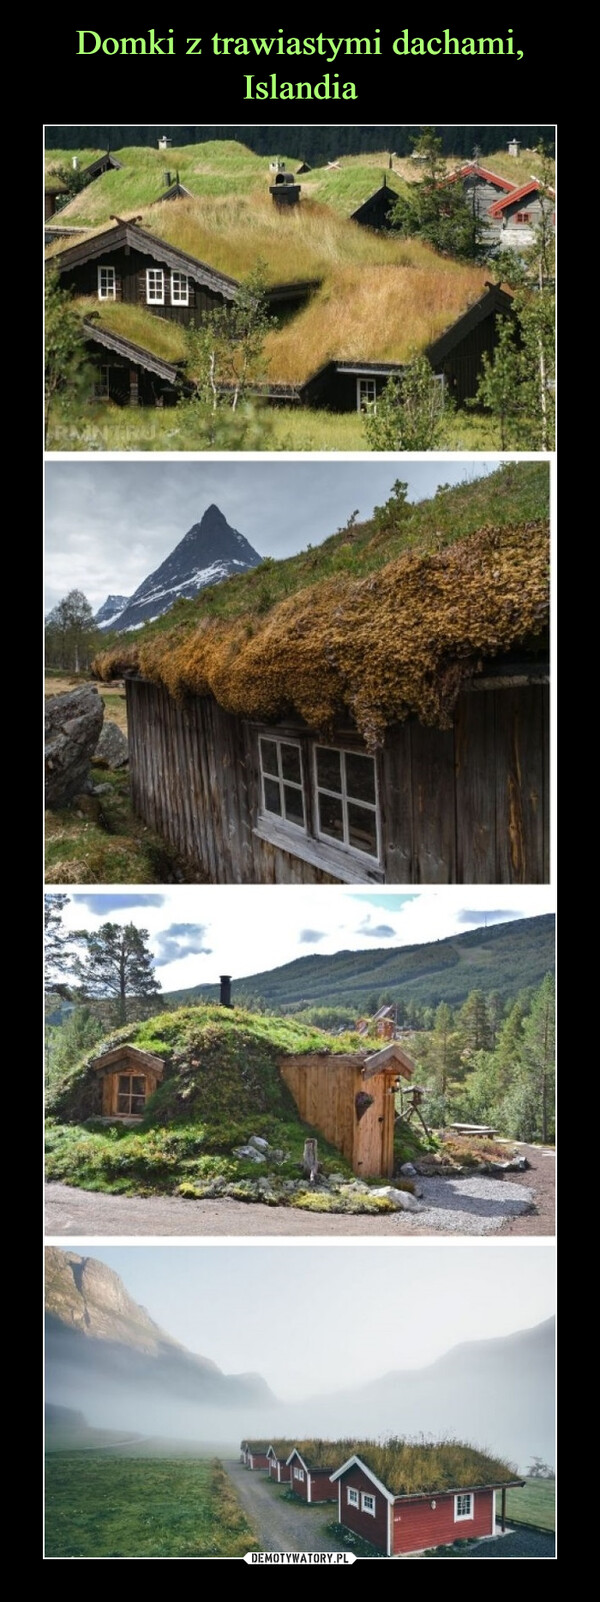 Domki z trawiastymi dachami, Islandia